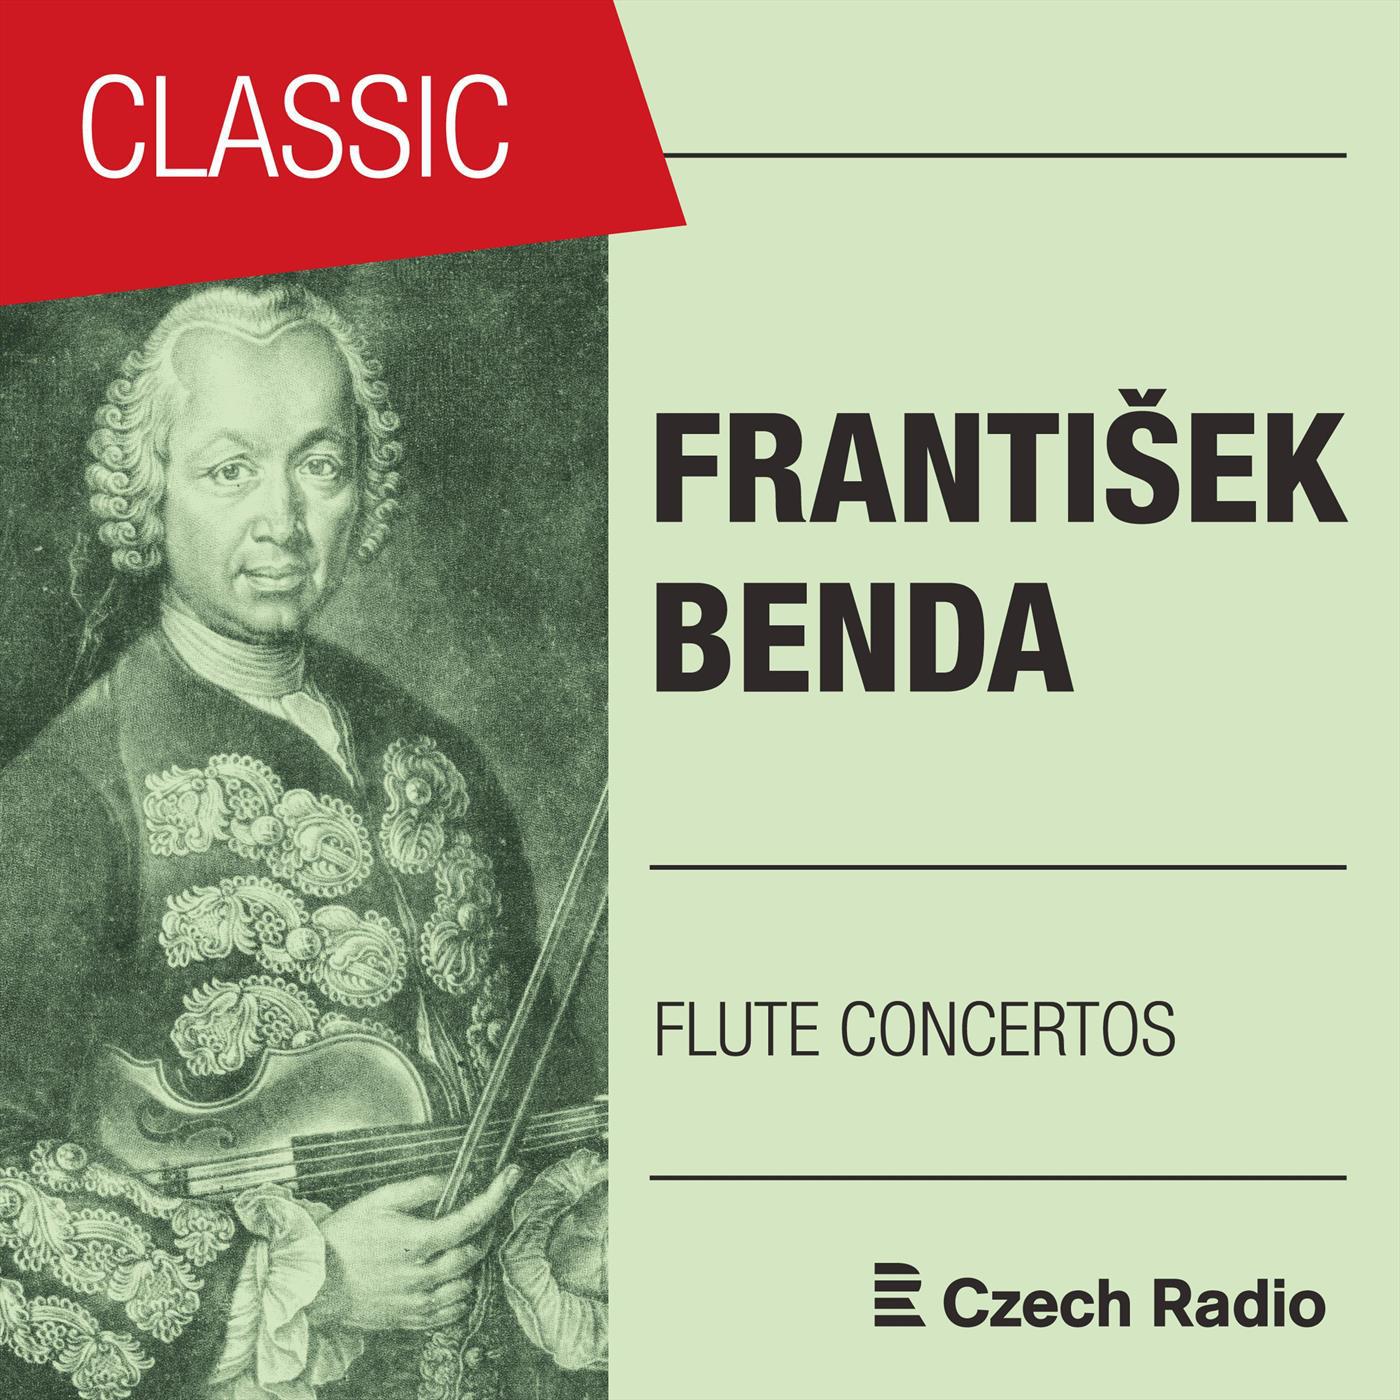 Concerto for Flute and Orchestra in E Minor: III. Presto